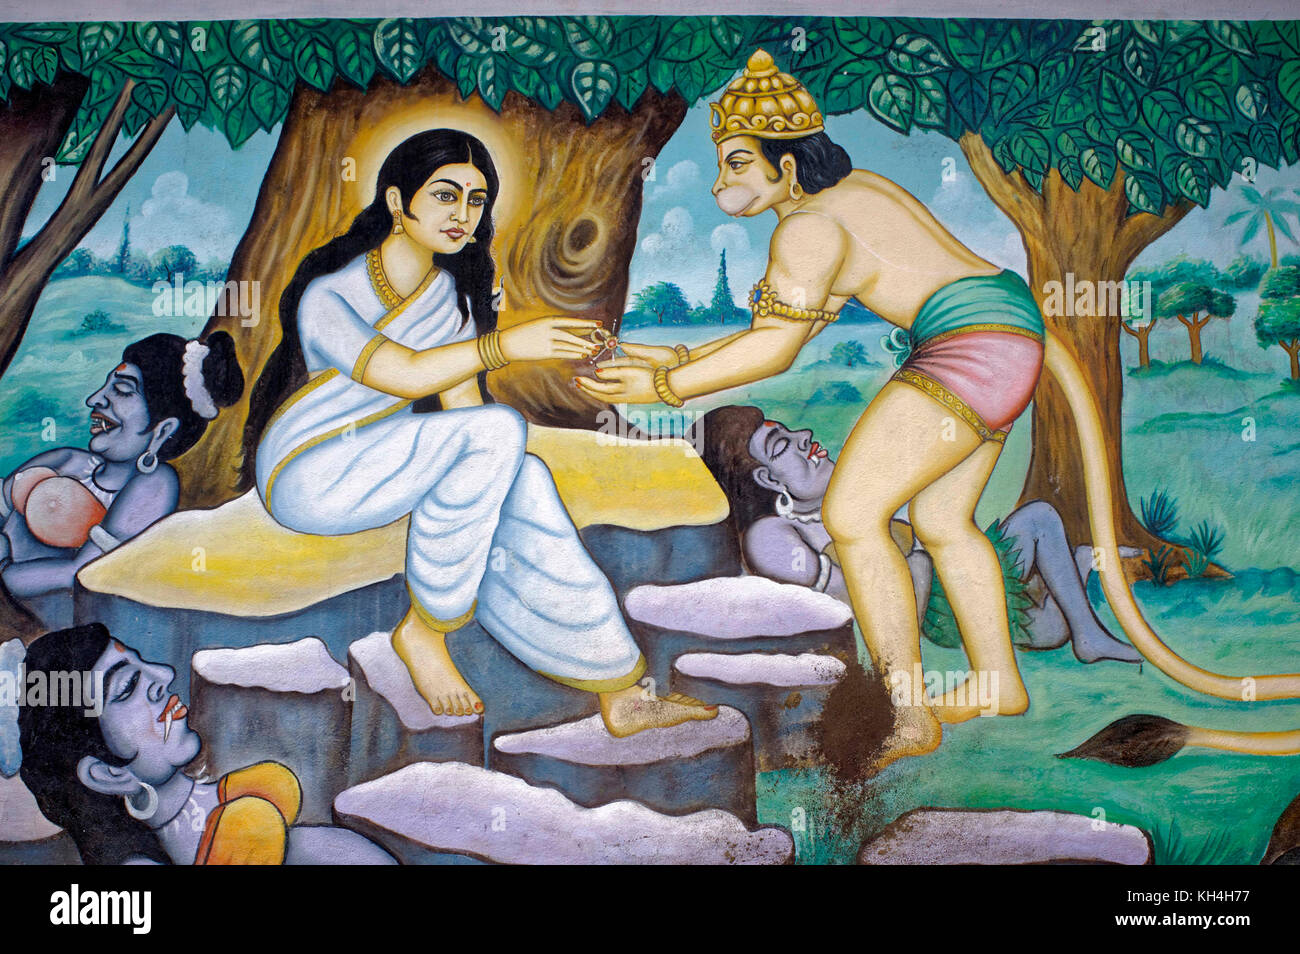 देवी सीता के पूर्व जन्म की कथा